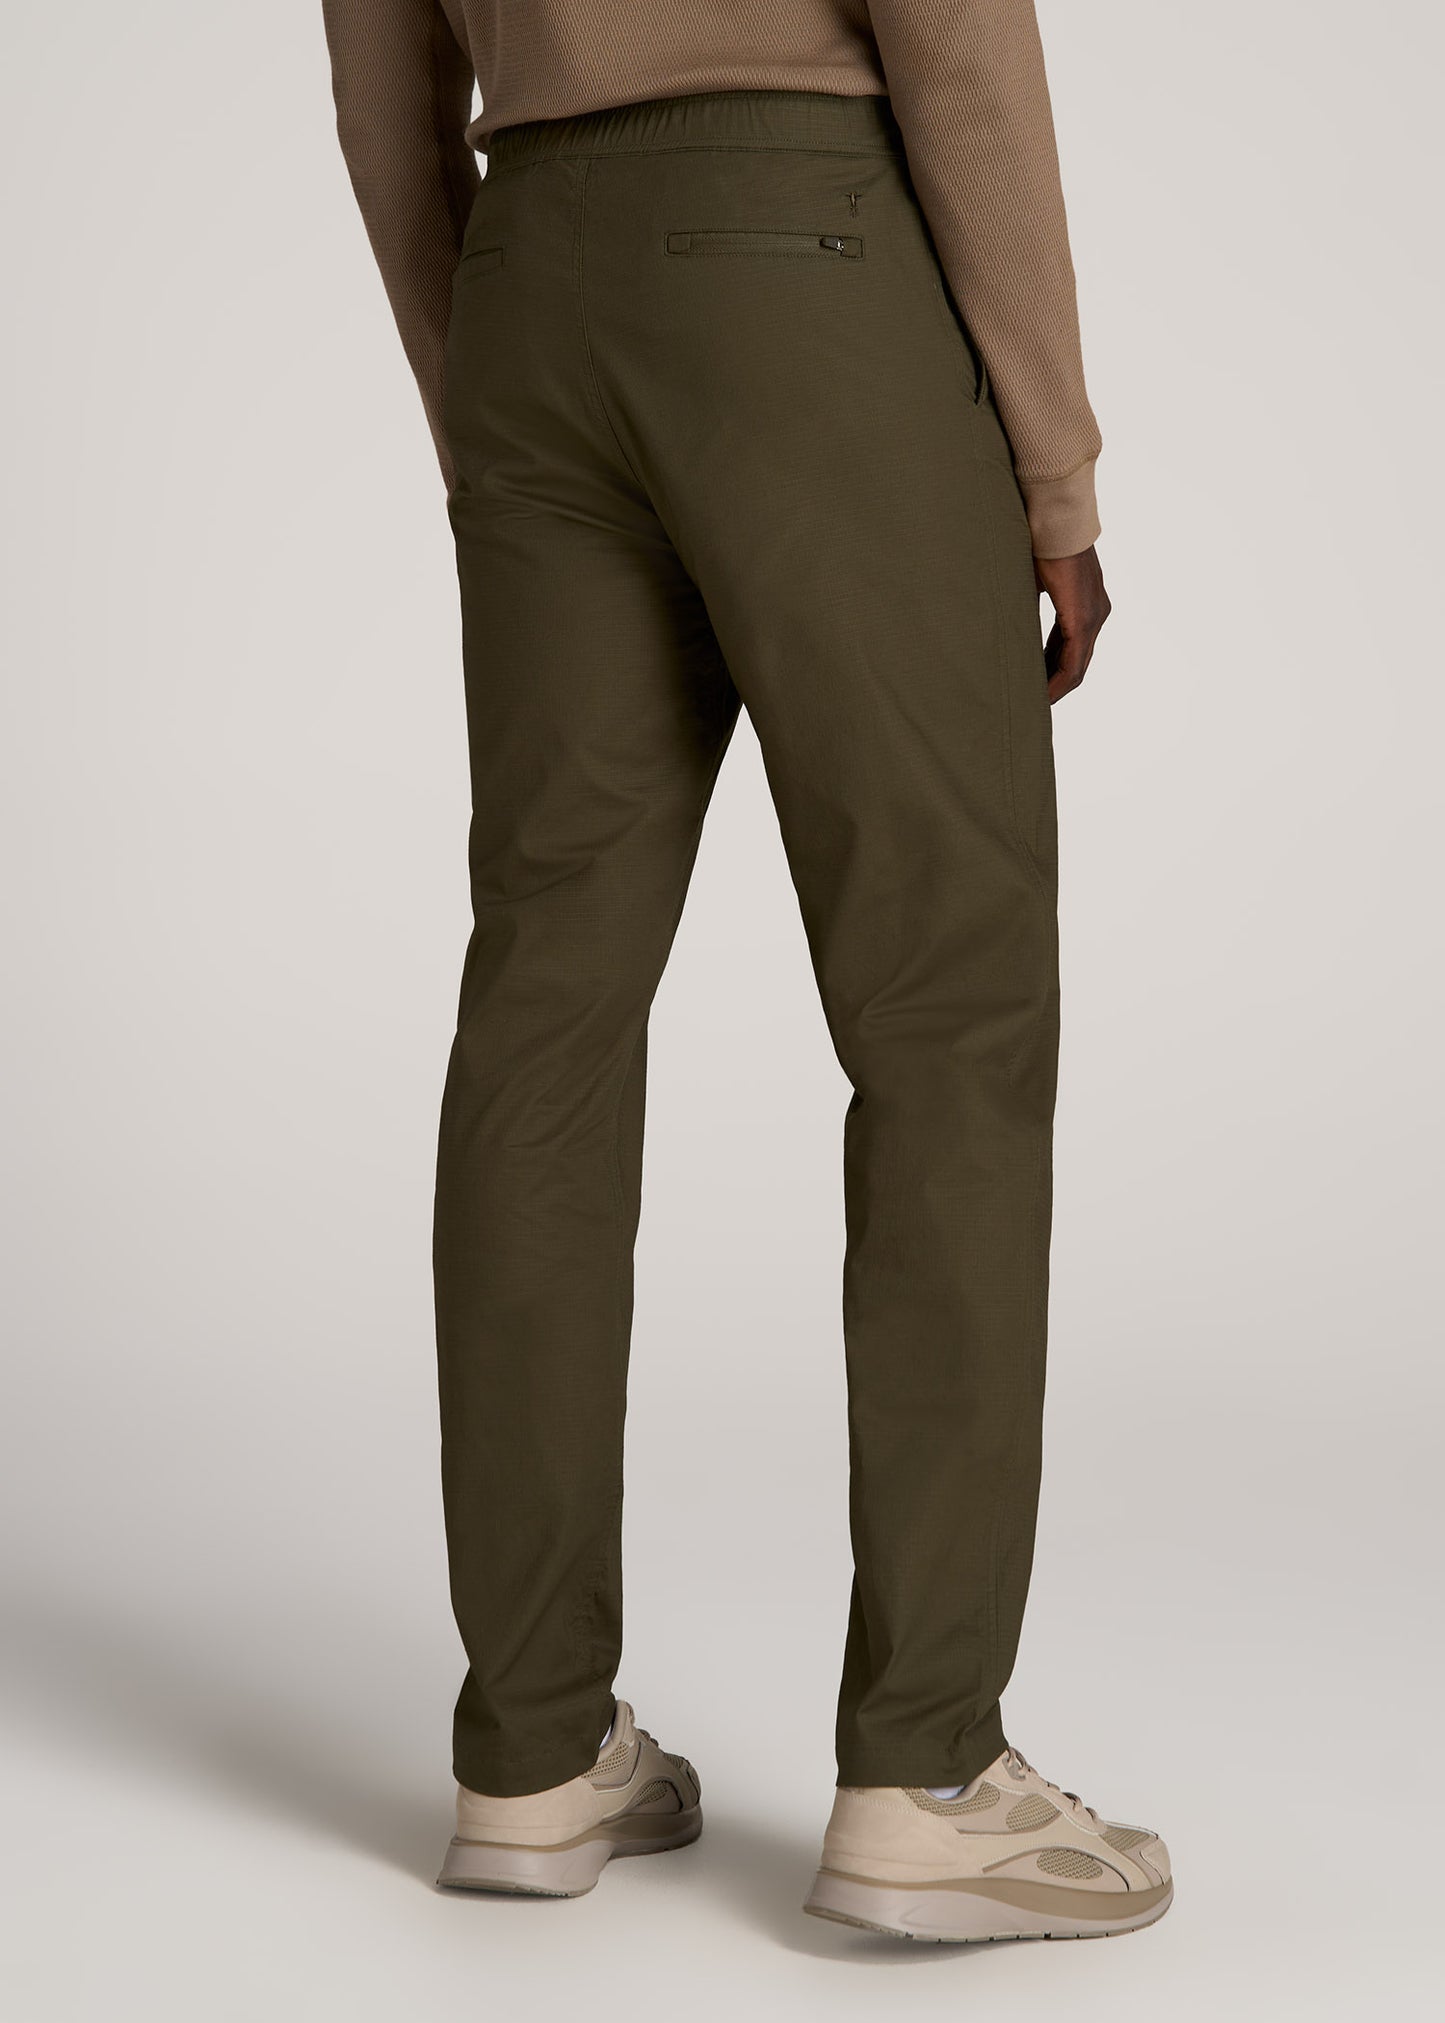 Tapered-Fit Ripstop Pants for Tall Men in Desert Khaki S / Tall / Desert Khaki